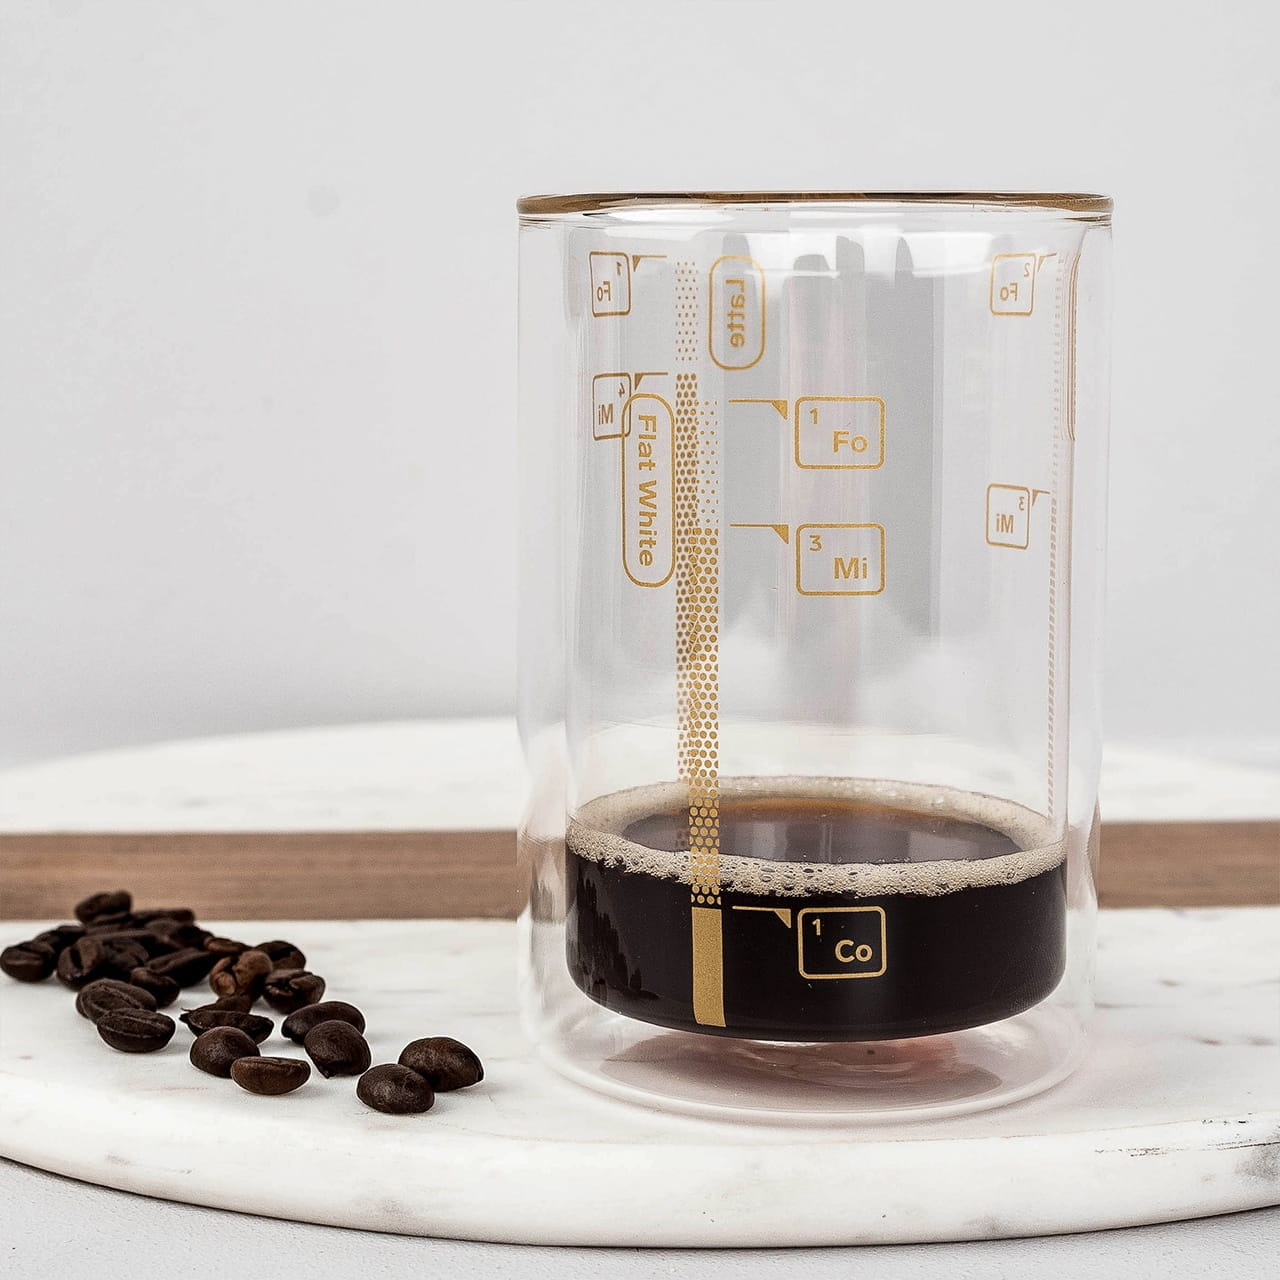 Szklanka do kawy z miark, czyli oryginalny prezent dla baristy